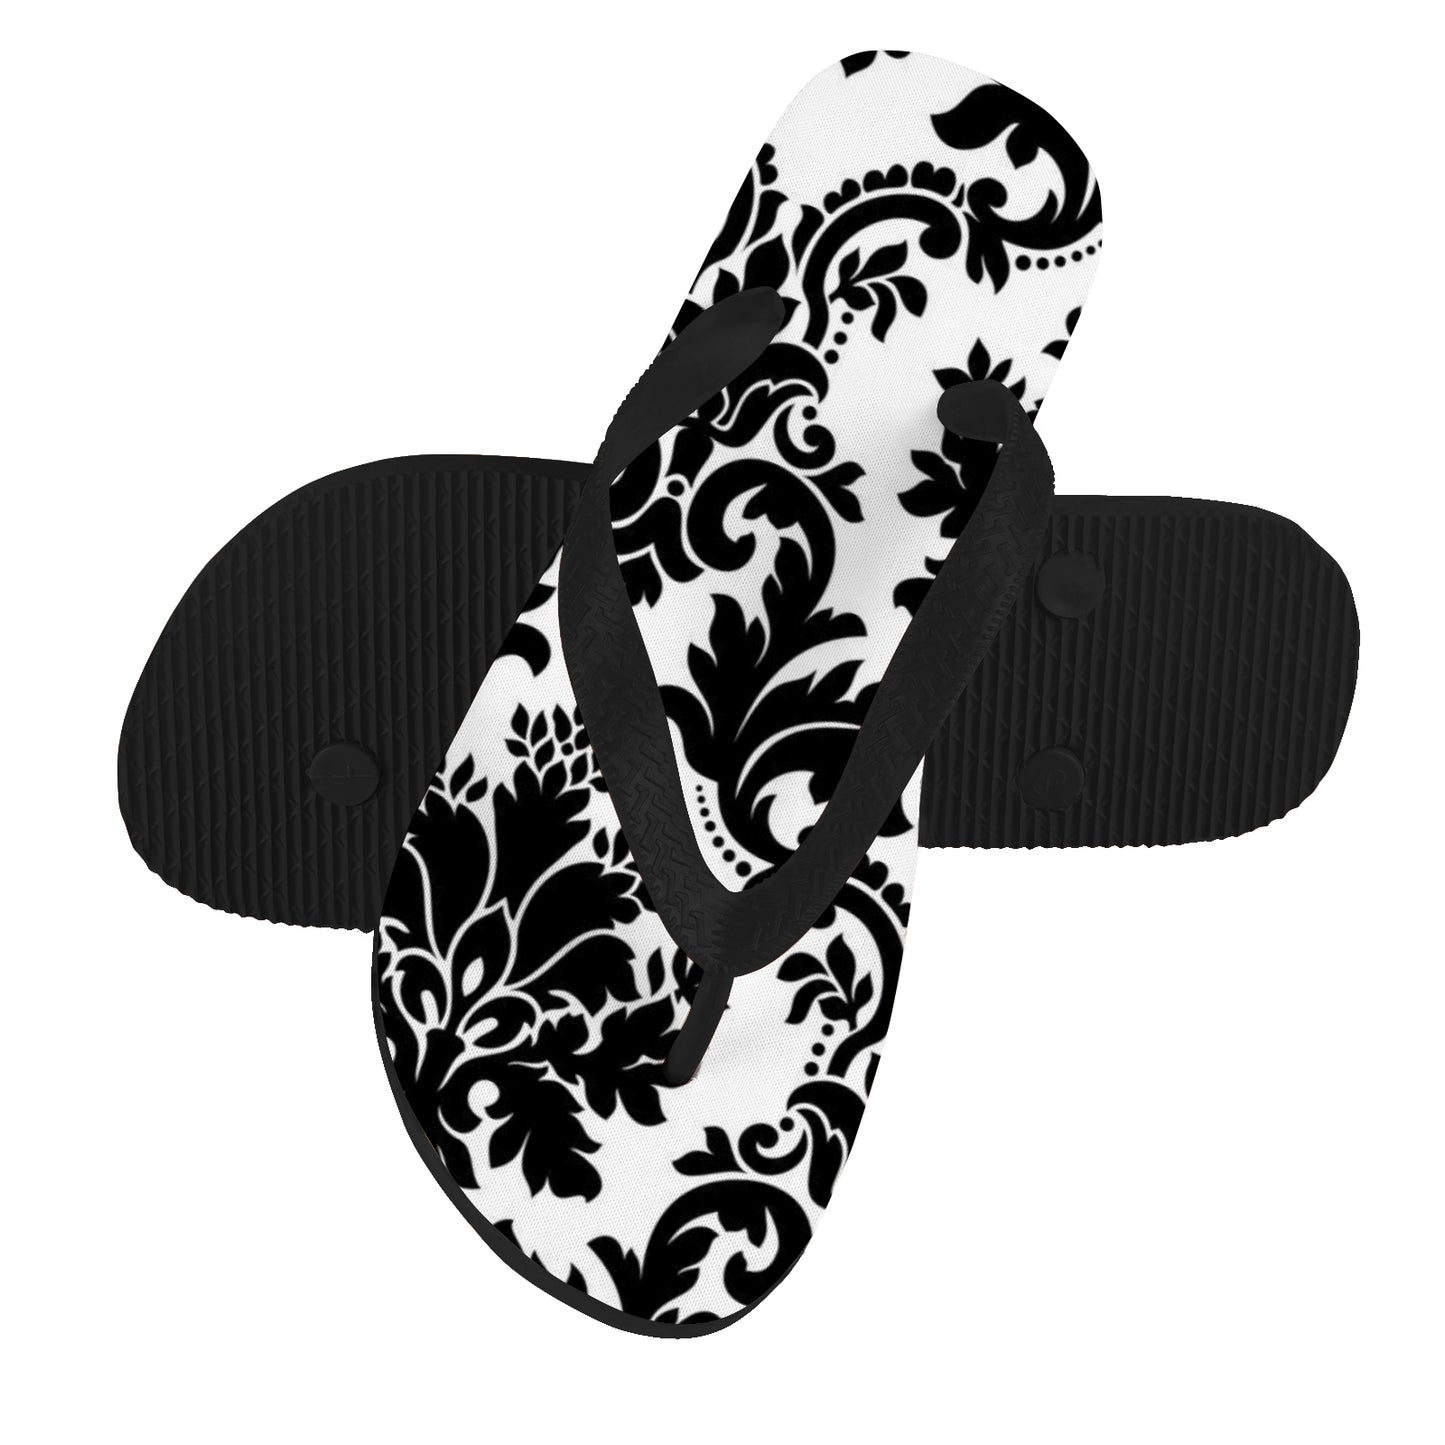 Slides - Black/White Floral